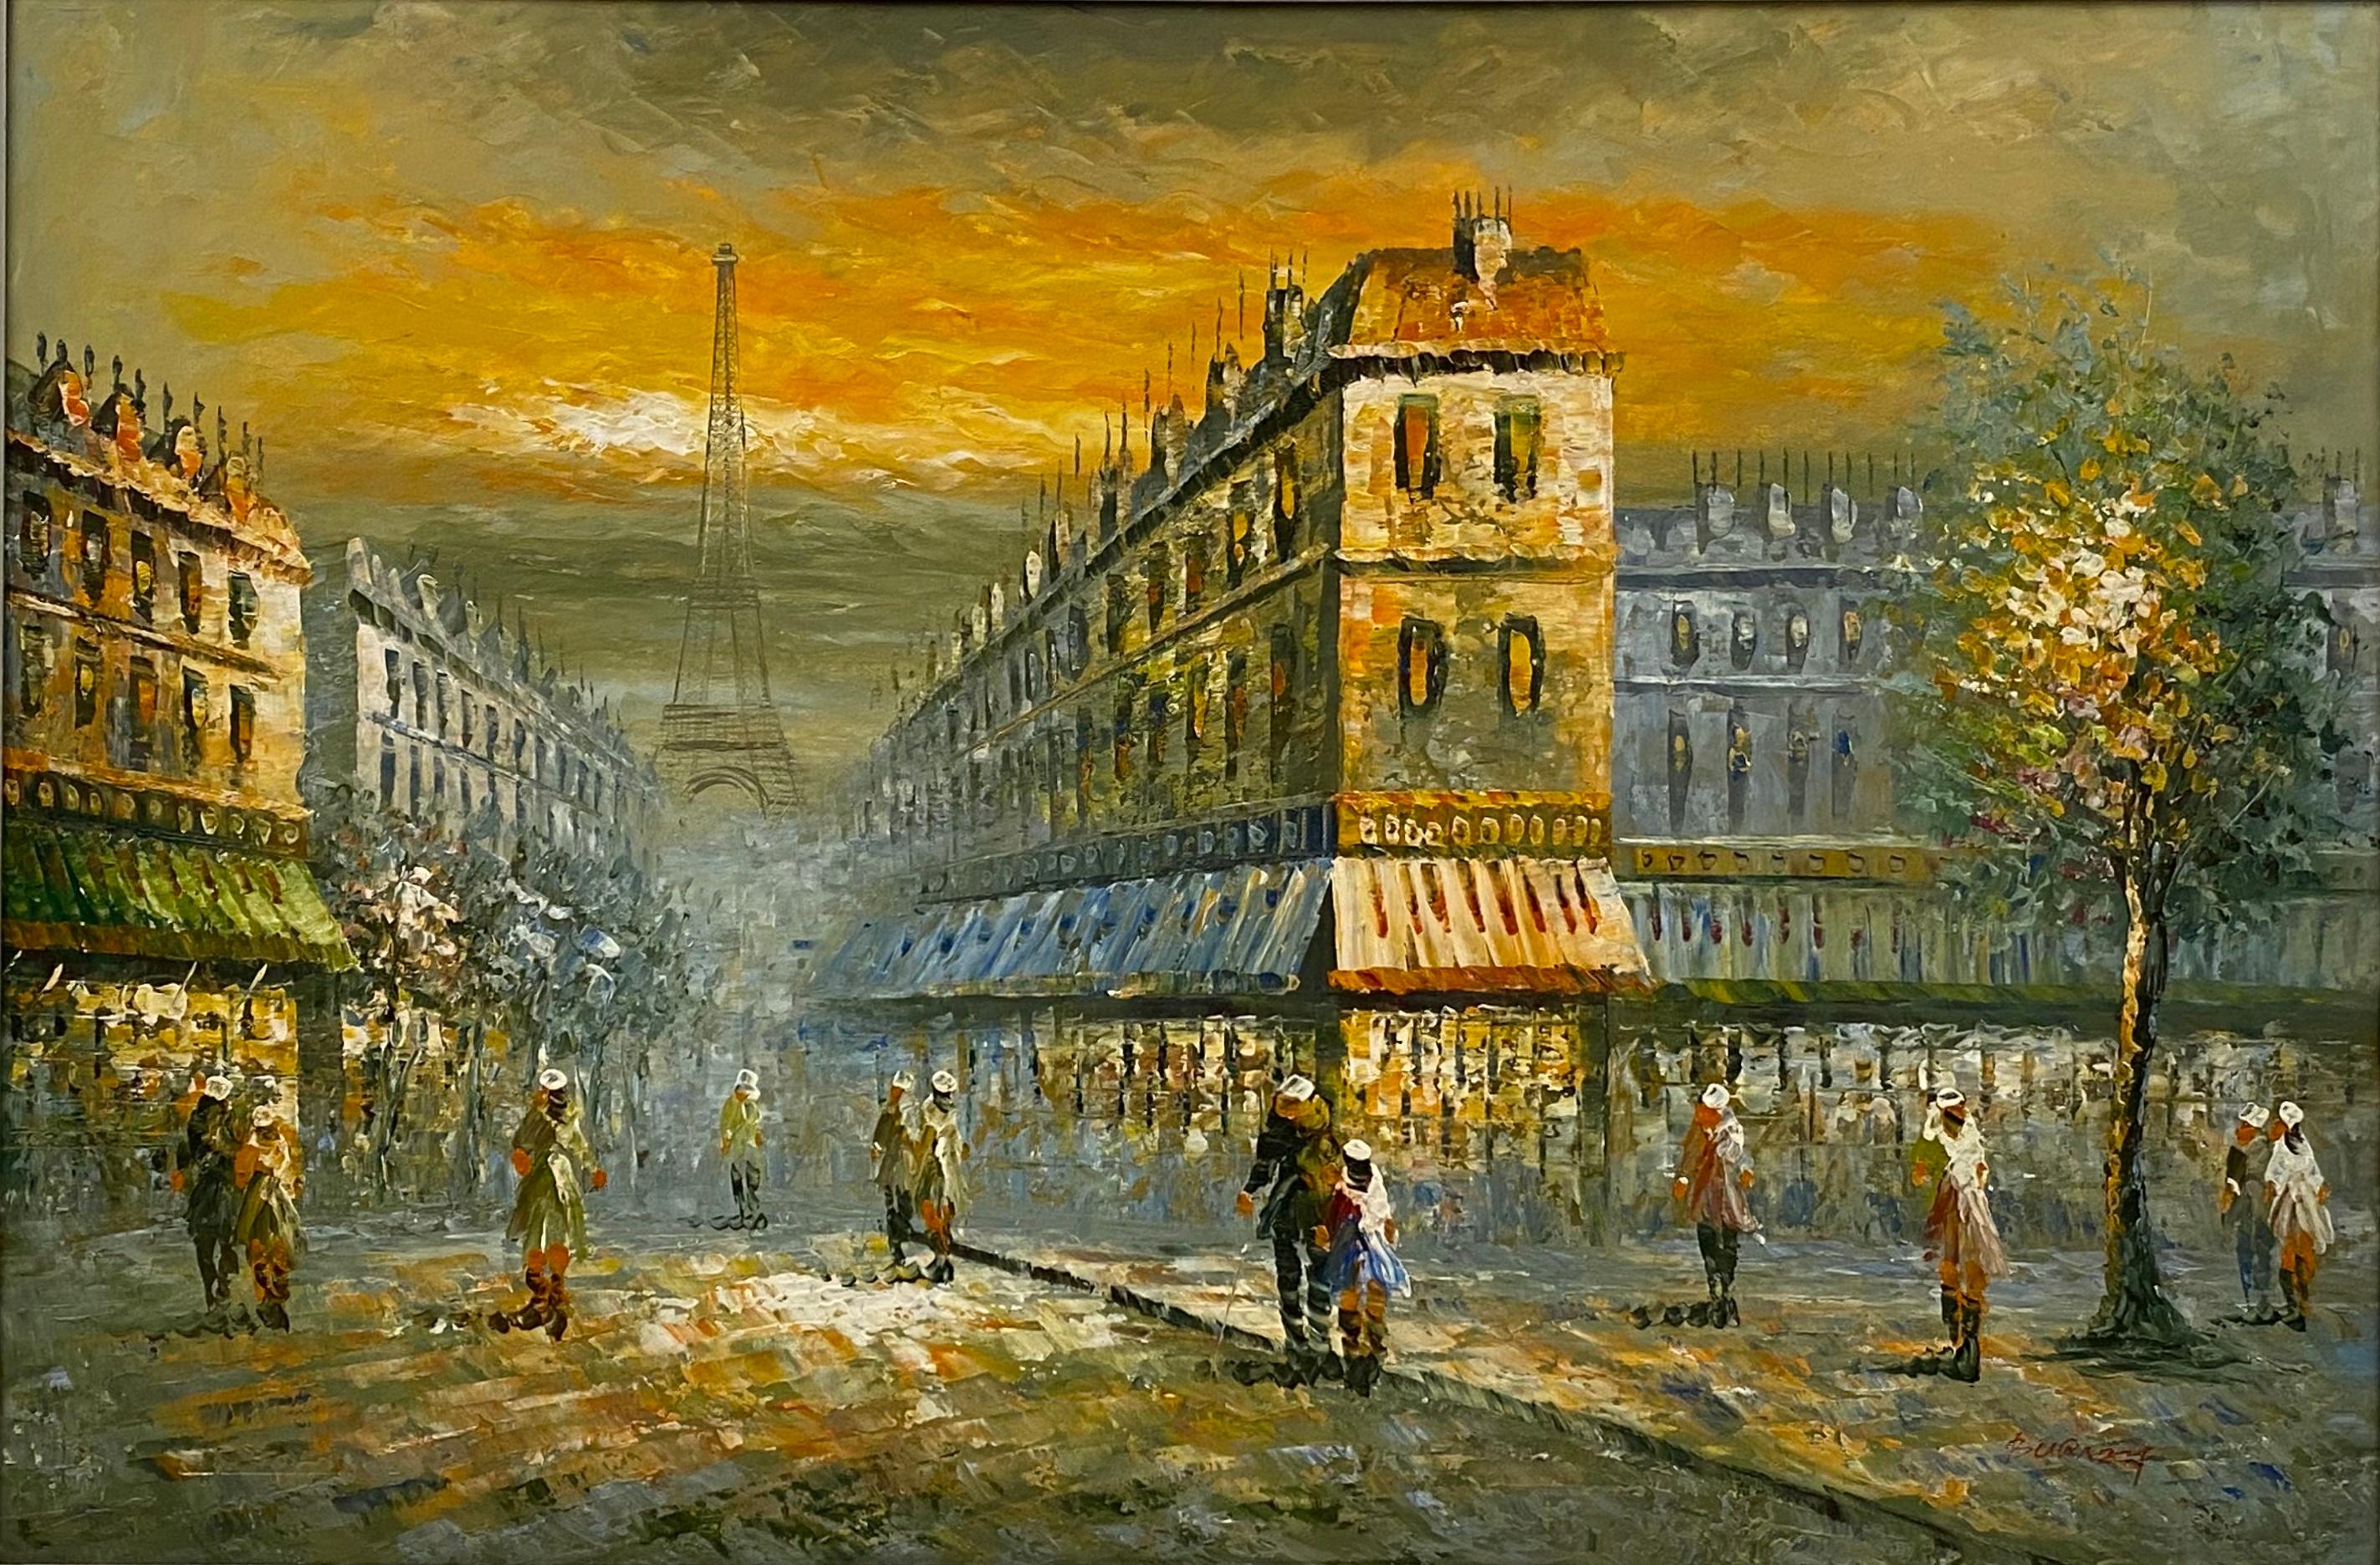 Une belle vue d'une scène de rue à Paris, en France. Cette peinture dépeint parfaitement la vie à Paris avec ses restaurants, ses rues animées, ses cafés, ses hôtels, ses monuments et sa magnifique architecture. L'établissement est situé à proximité